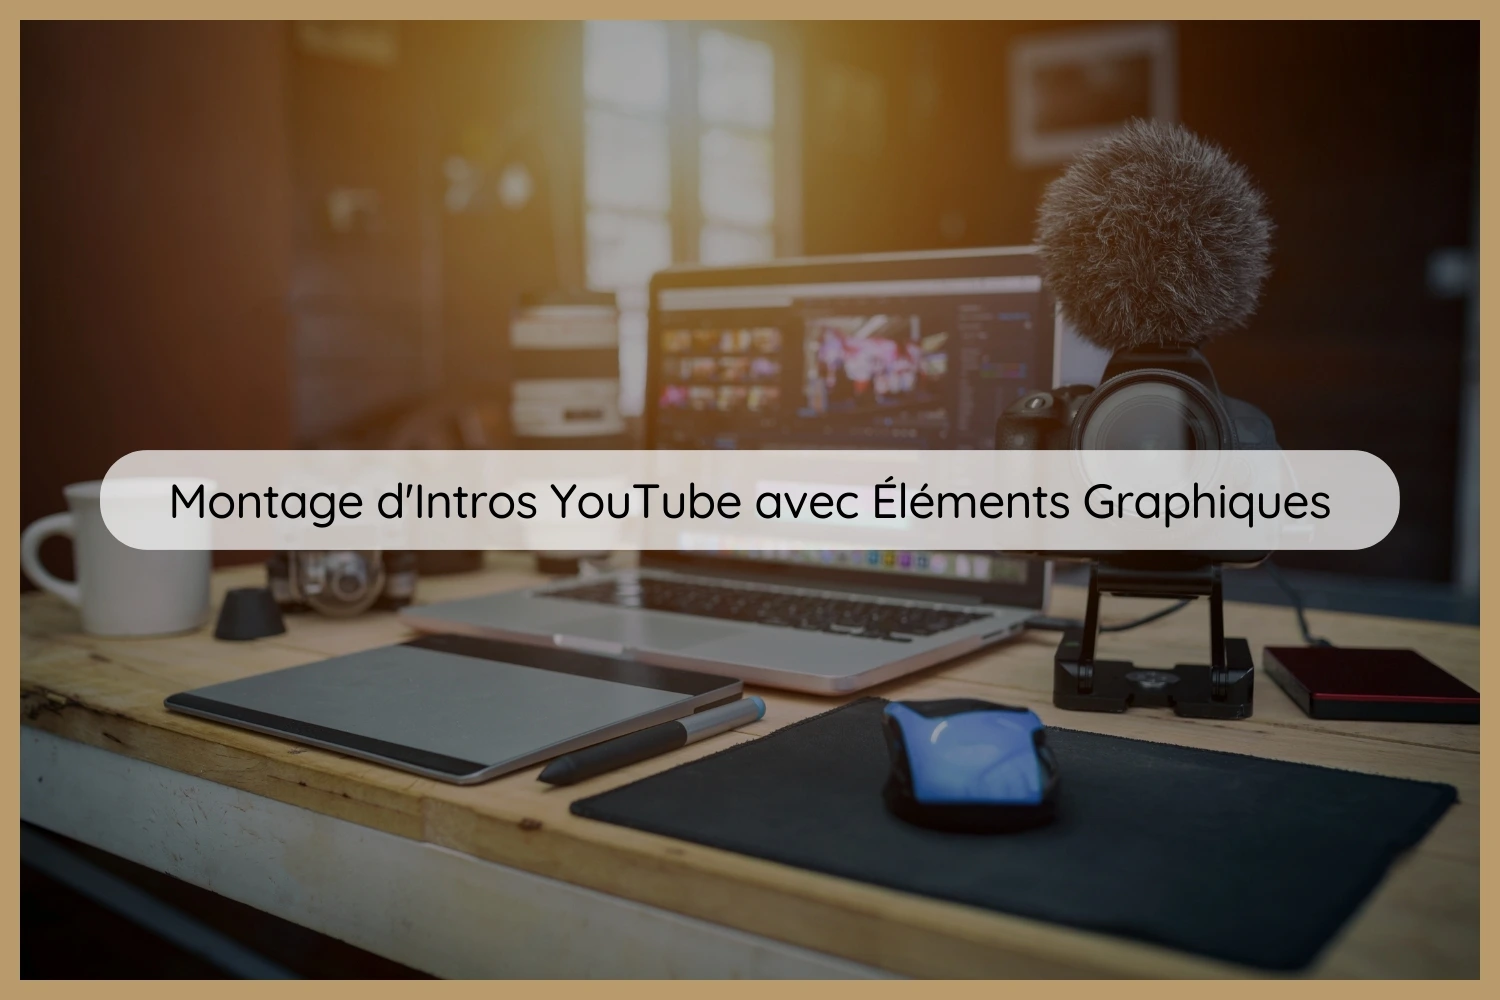 Montage d'Intros YouTube avec Éléments Graphiques